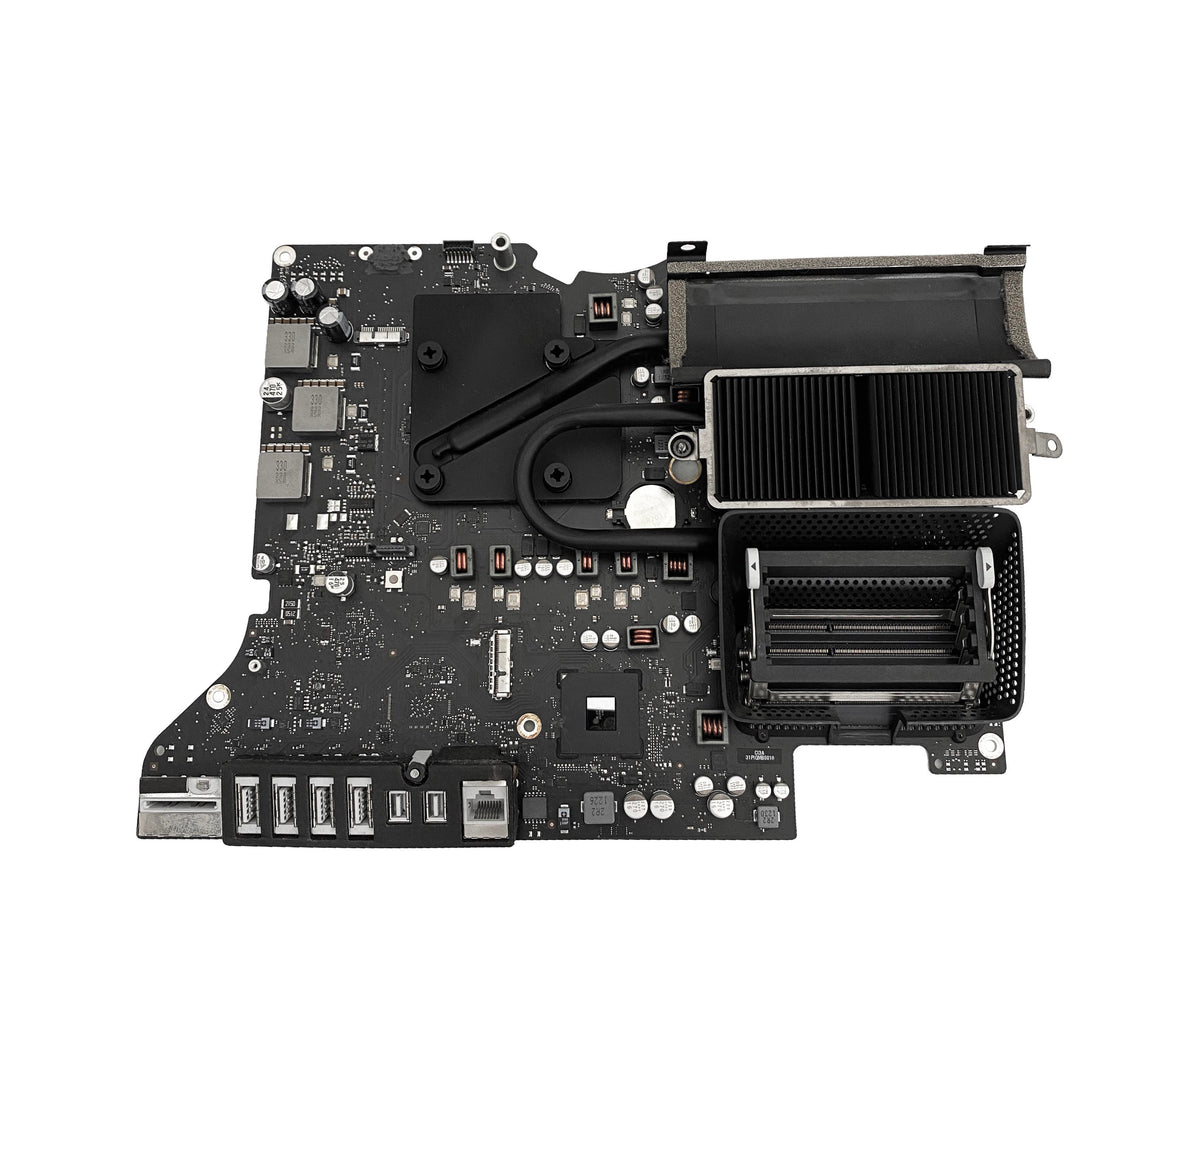 iMac 27-inch A1419 Logic Board - 820-4652-A (2014 iMac 27-inch Retina 5K)